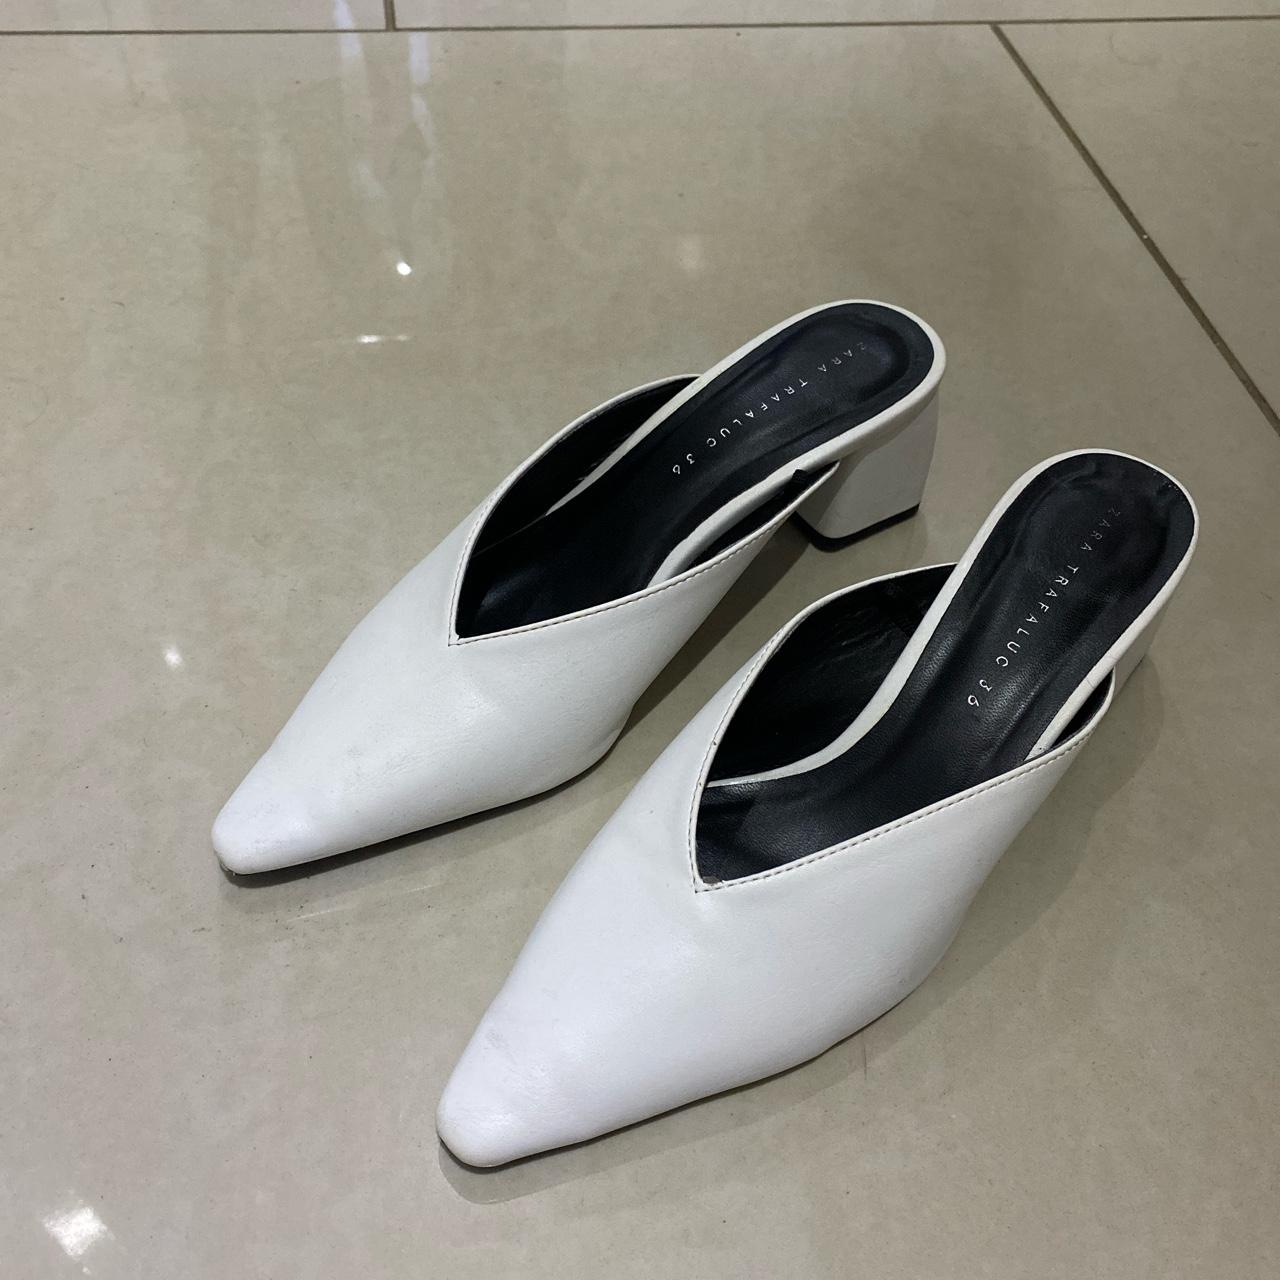 White Zara Mules / Clogs pointed toe block heels,... - Depop